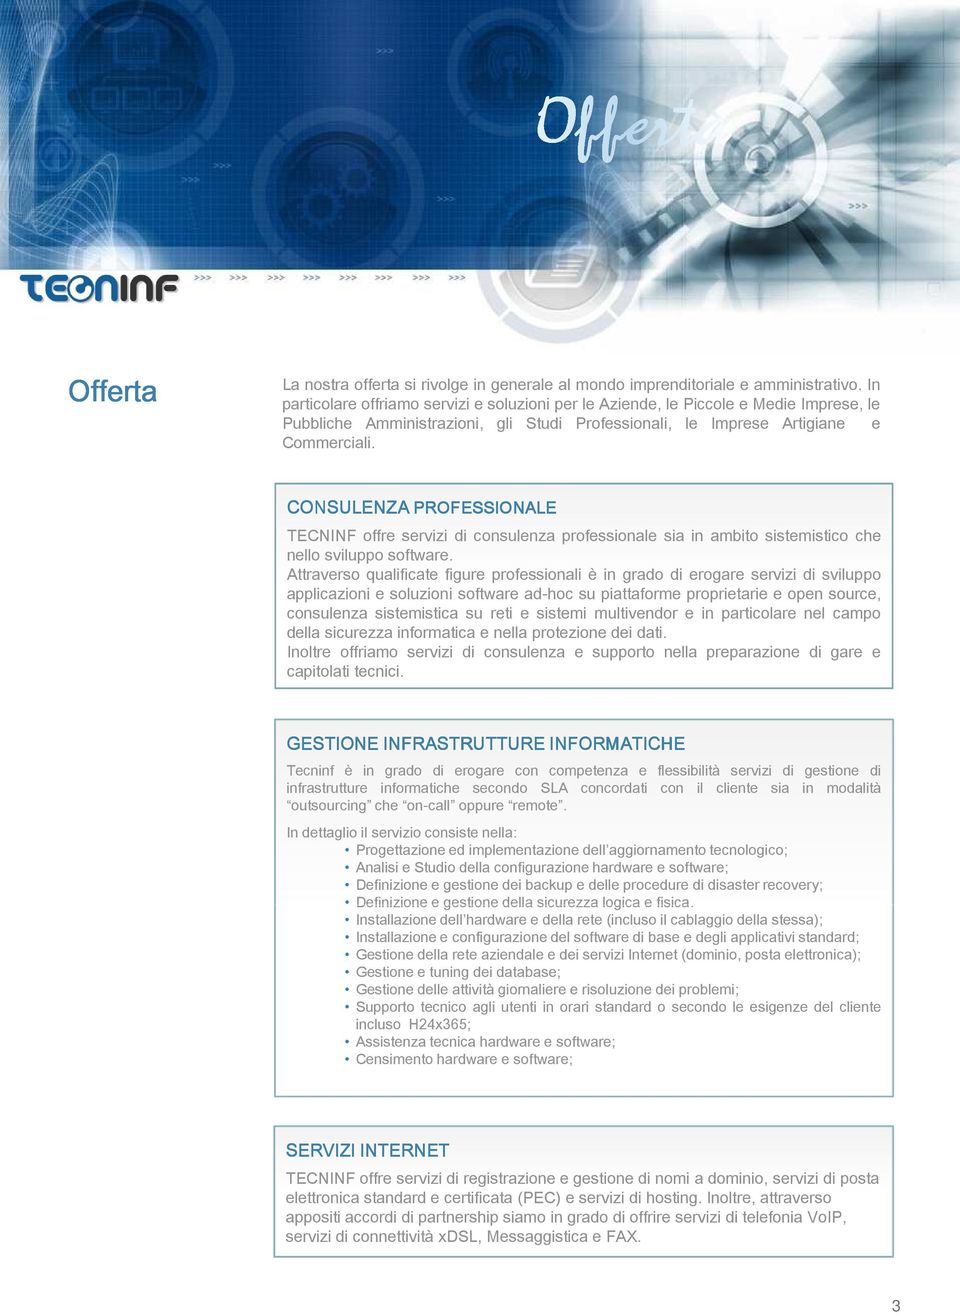 CONSULENZA PROFESSIONALE TECNINF offre servizi di consulenza professionale sia in ambito sistemistico che nello sviluppo software.